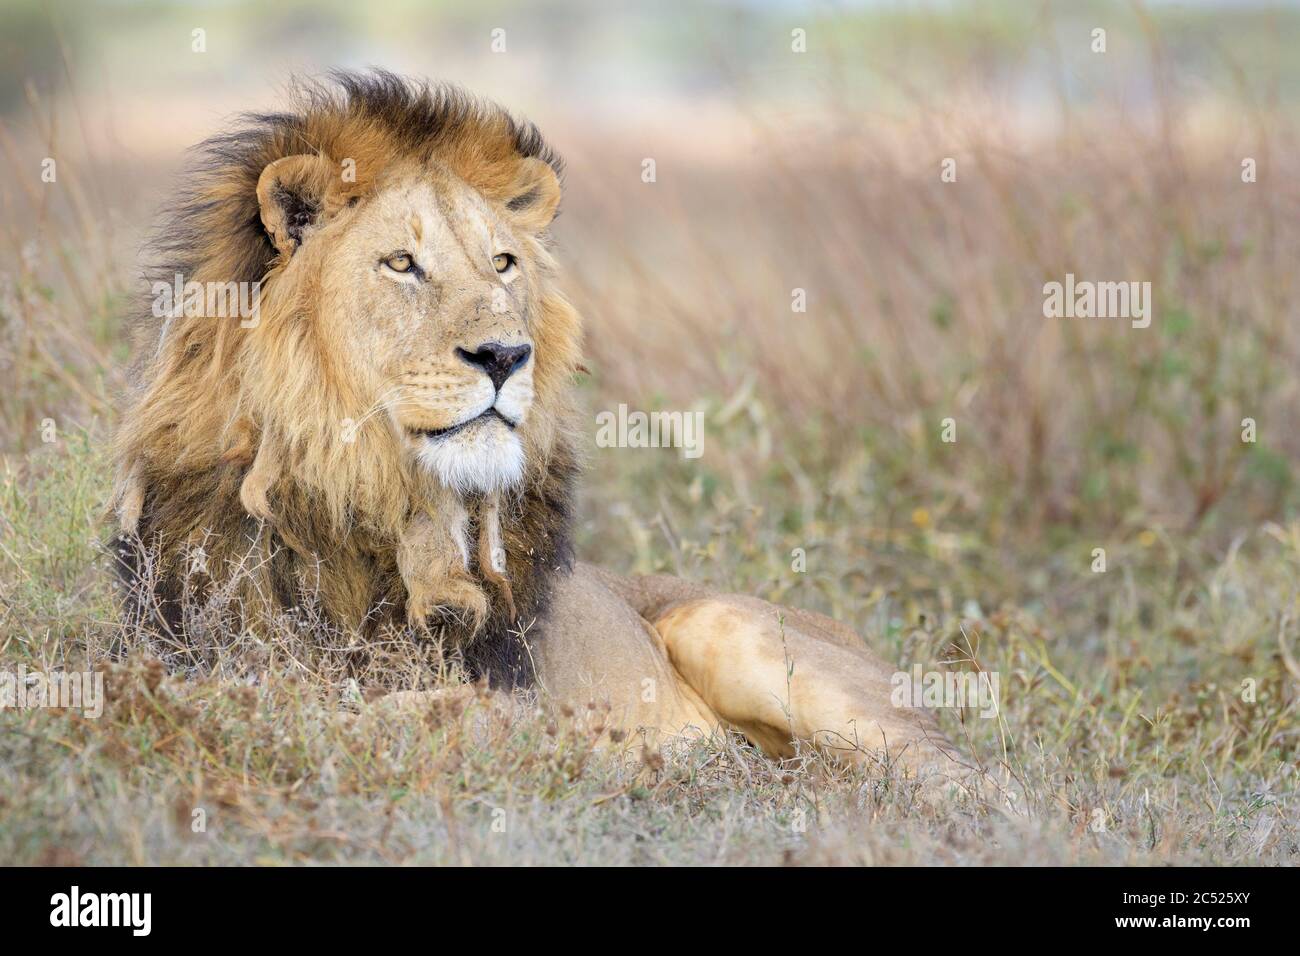 Lion africain (Panthera leo), portrait masculin, couché sur la savane, zone de conservation de Ngorongoro, Tanzanie. Banque D'Images